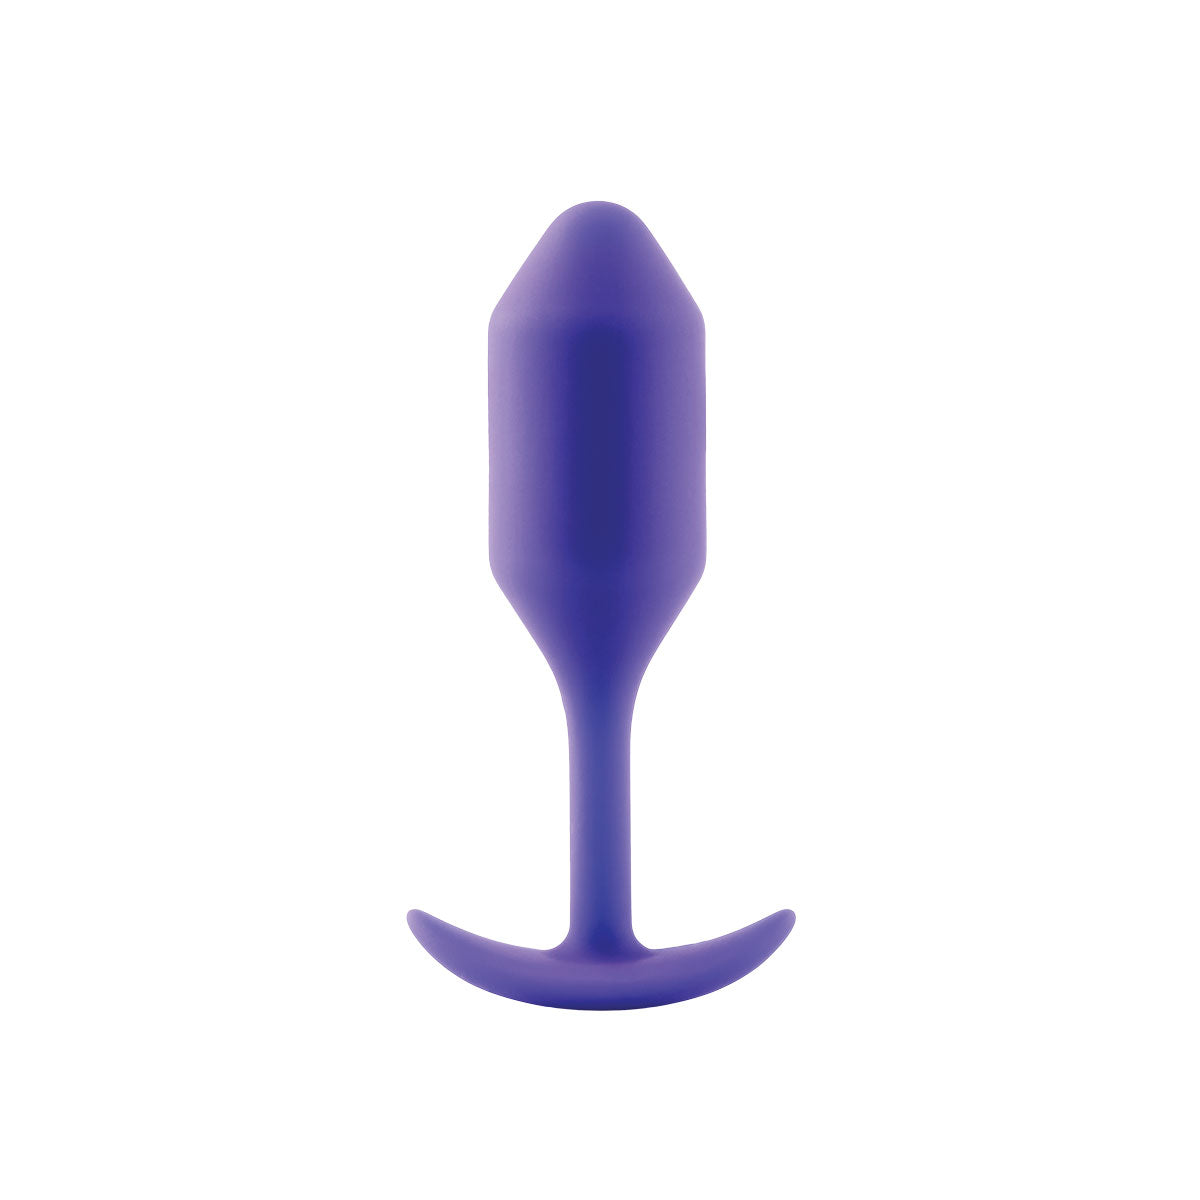 Snug Plug 2 purple